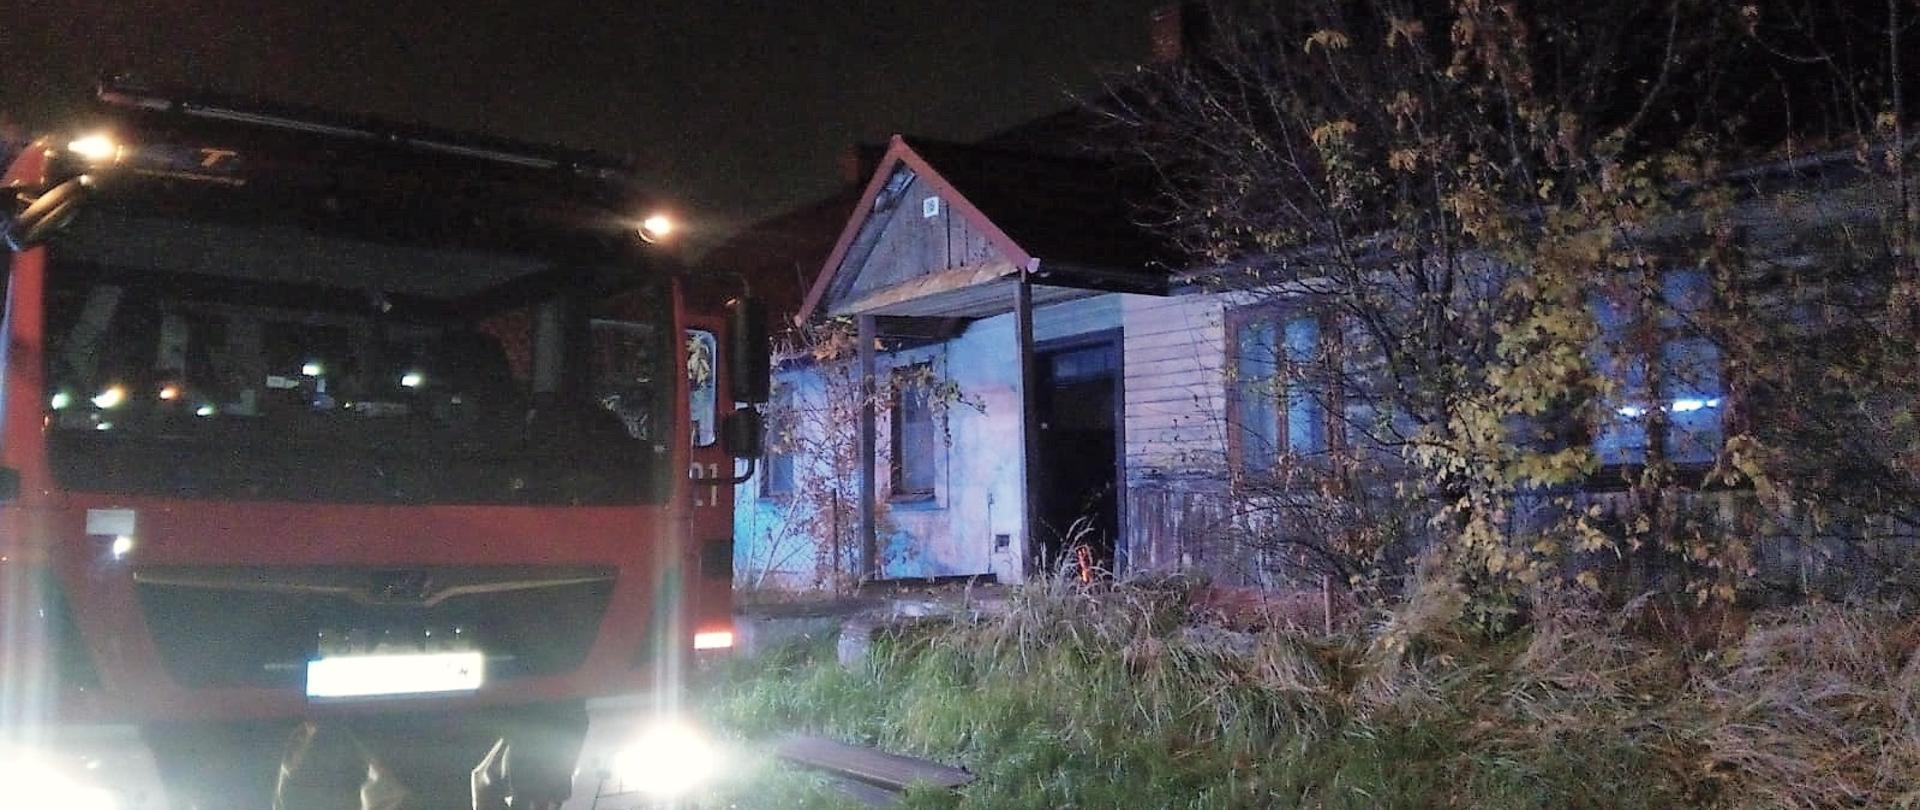 Na zdjęciu po lewej stronie stoi samochód pożarniczy a po prawej widać opuszczony dom jednorodzinny, w którym doszło do pożaru drzwi wejściowych.